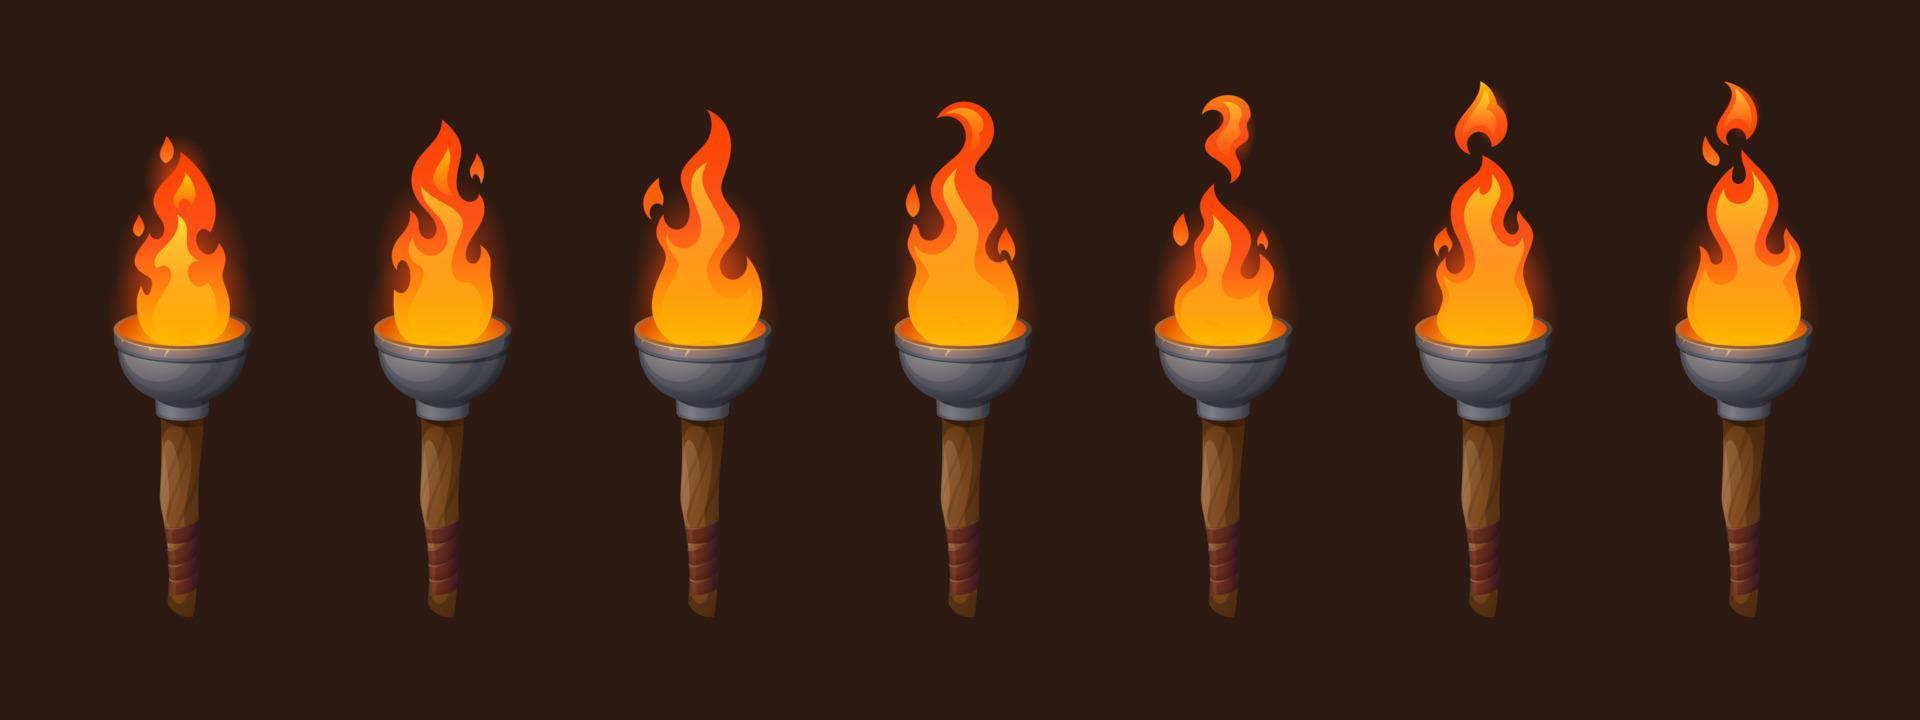 conjunto de antorchas de sprite medievales con fuego ardiente vector